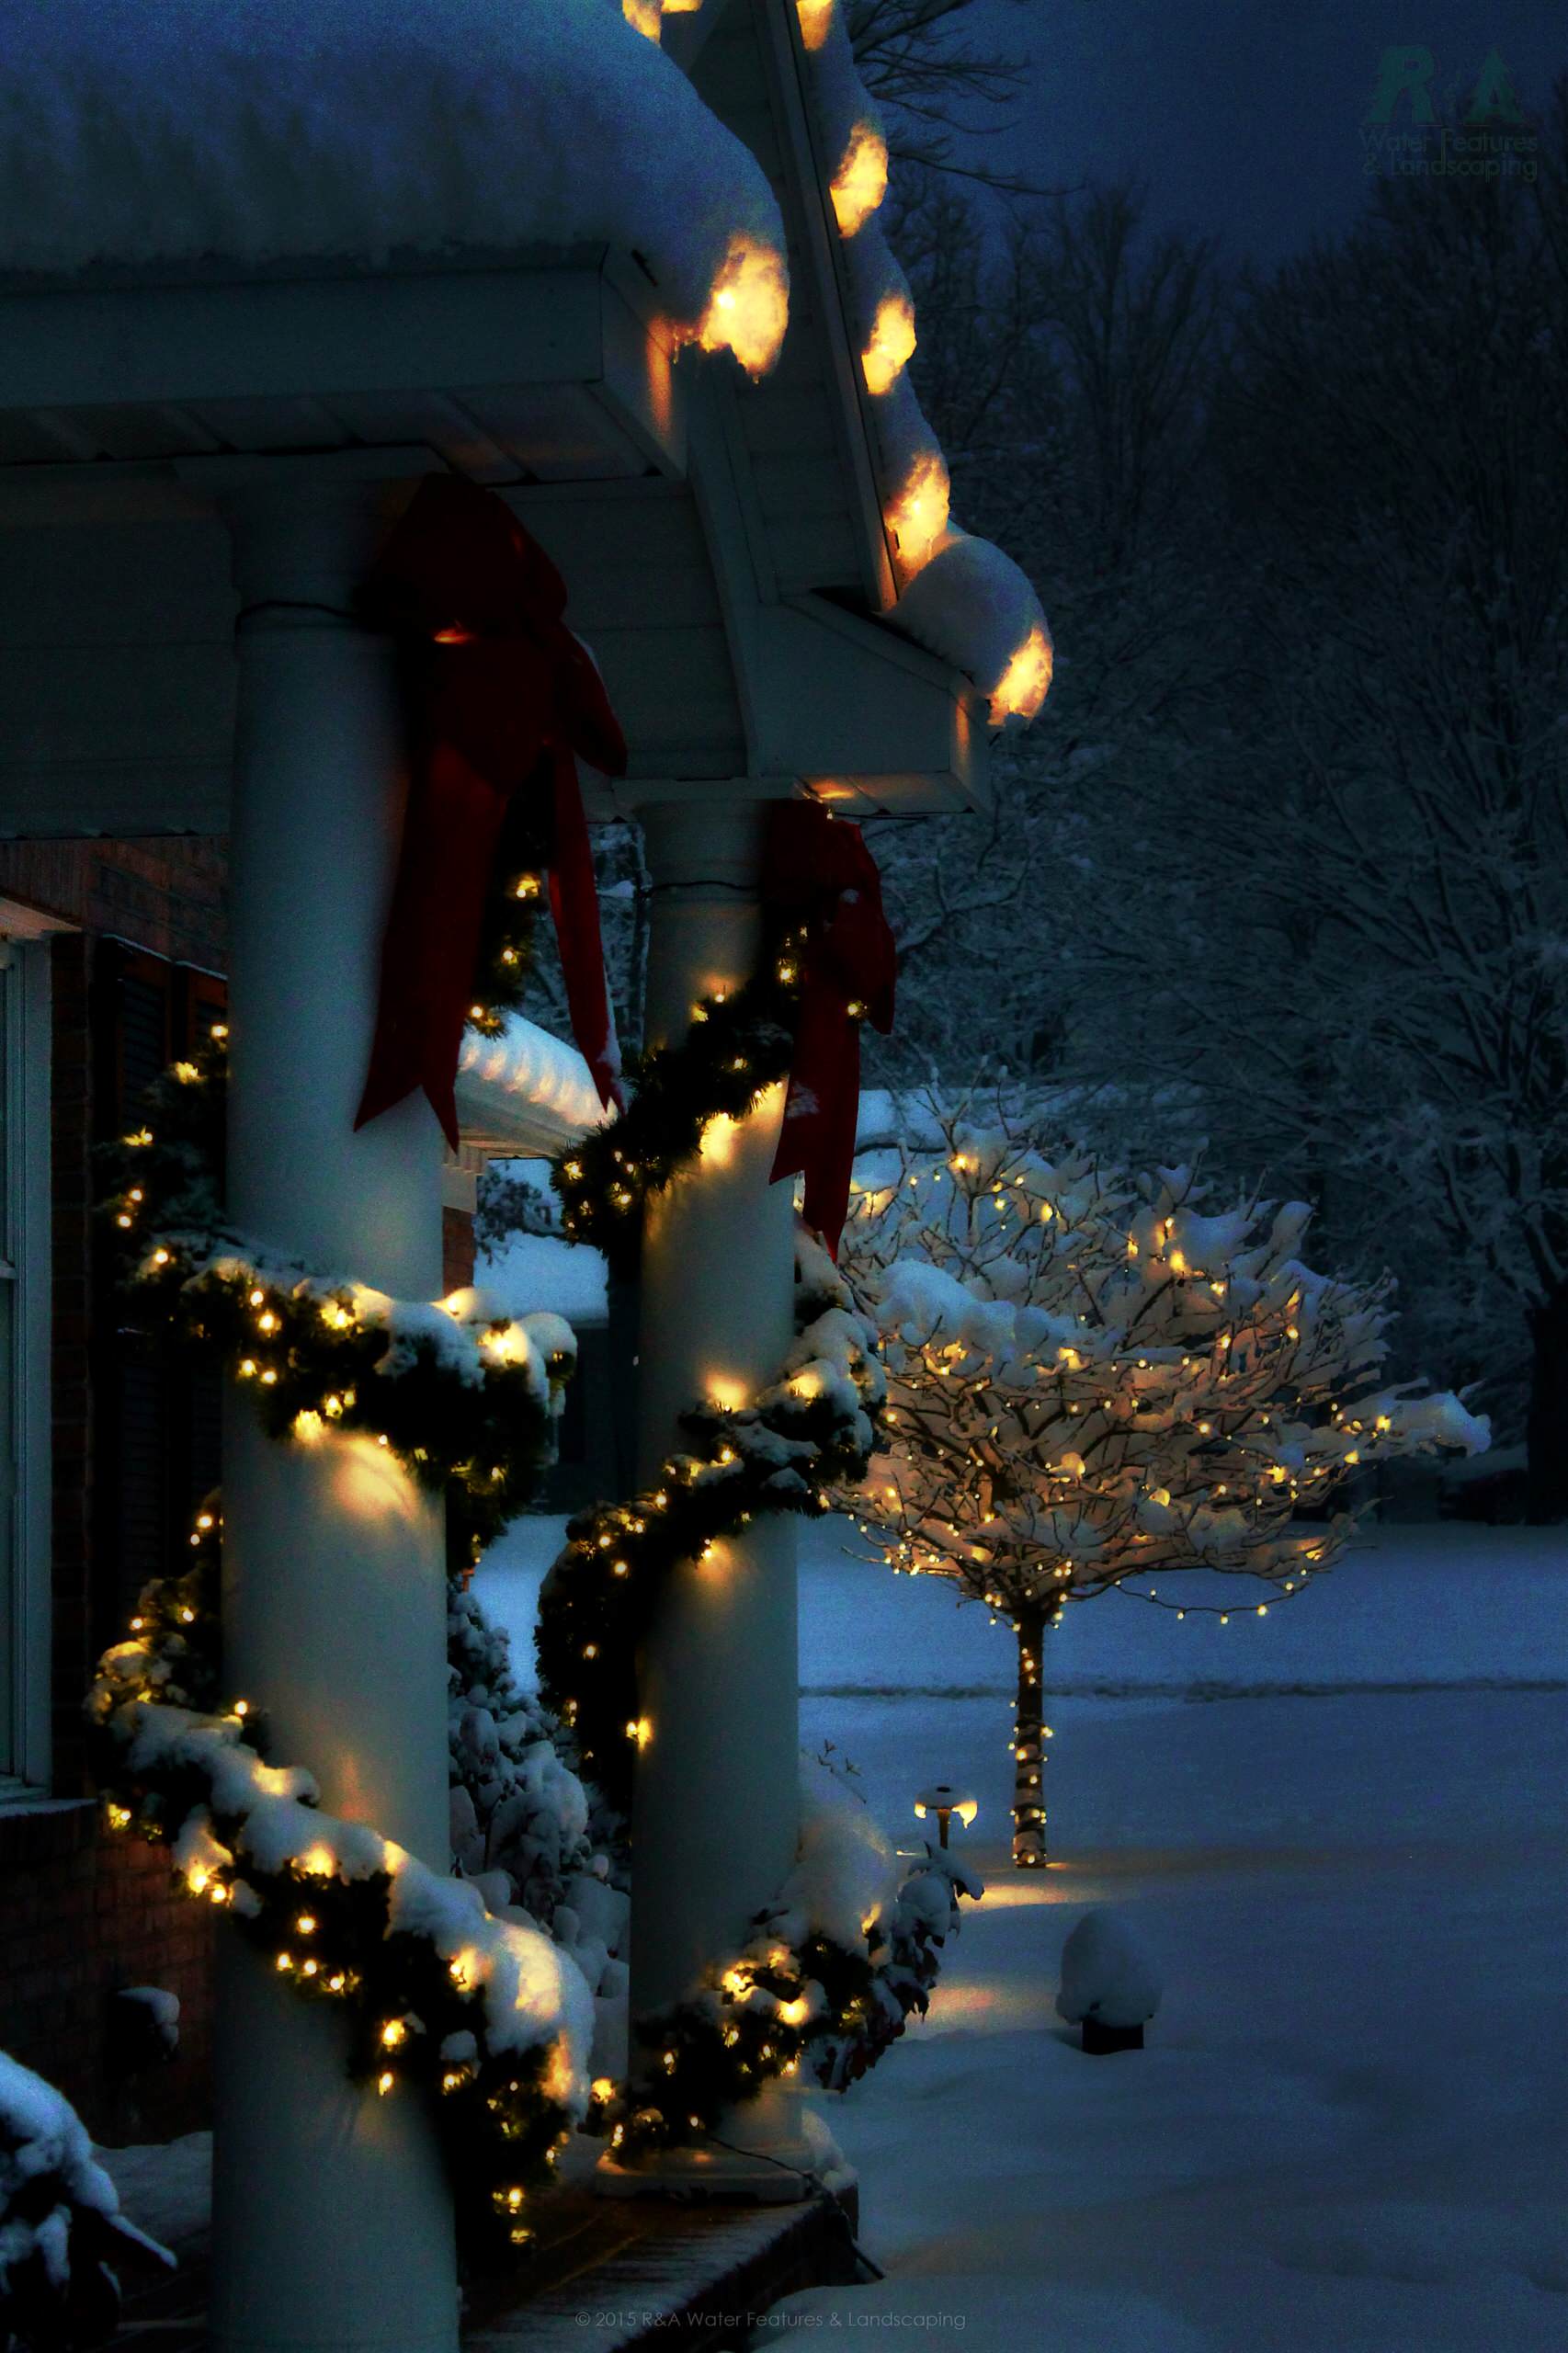 Новогодние светодиодные гирлянды: какую выбрать для украшения дома или елки